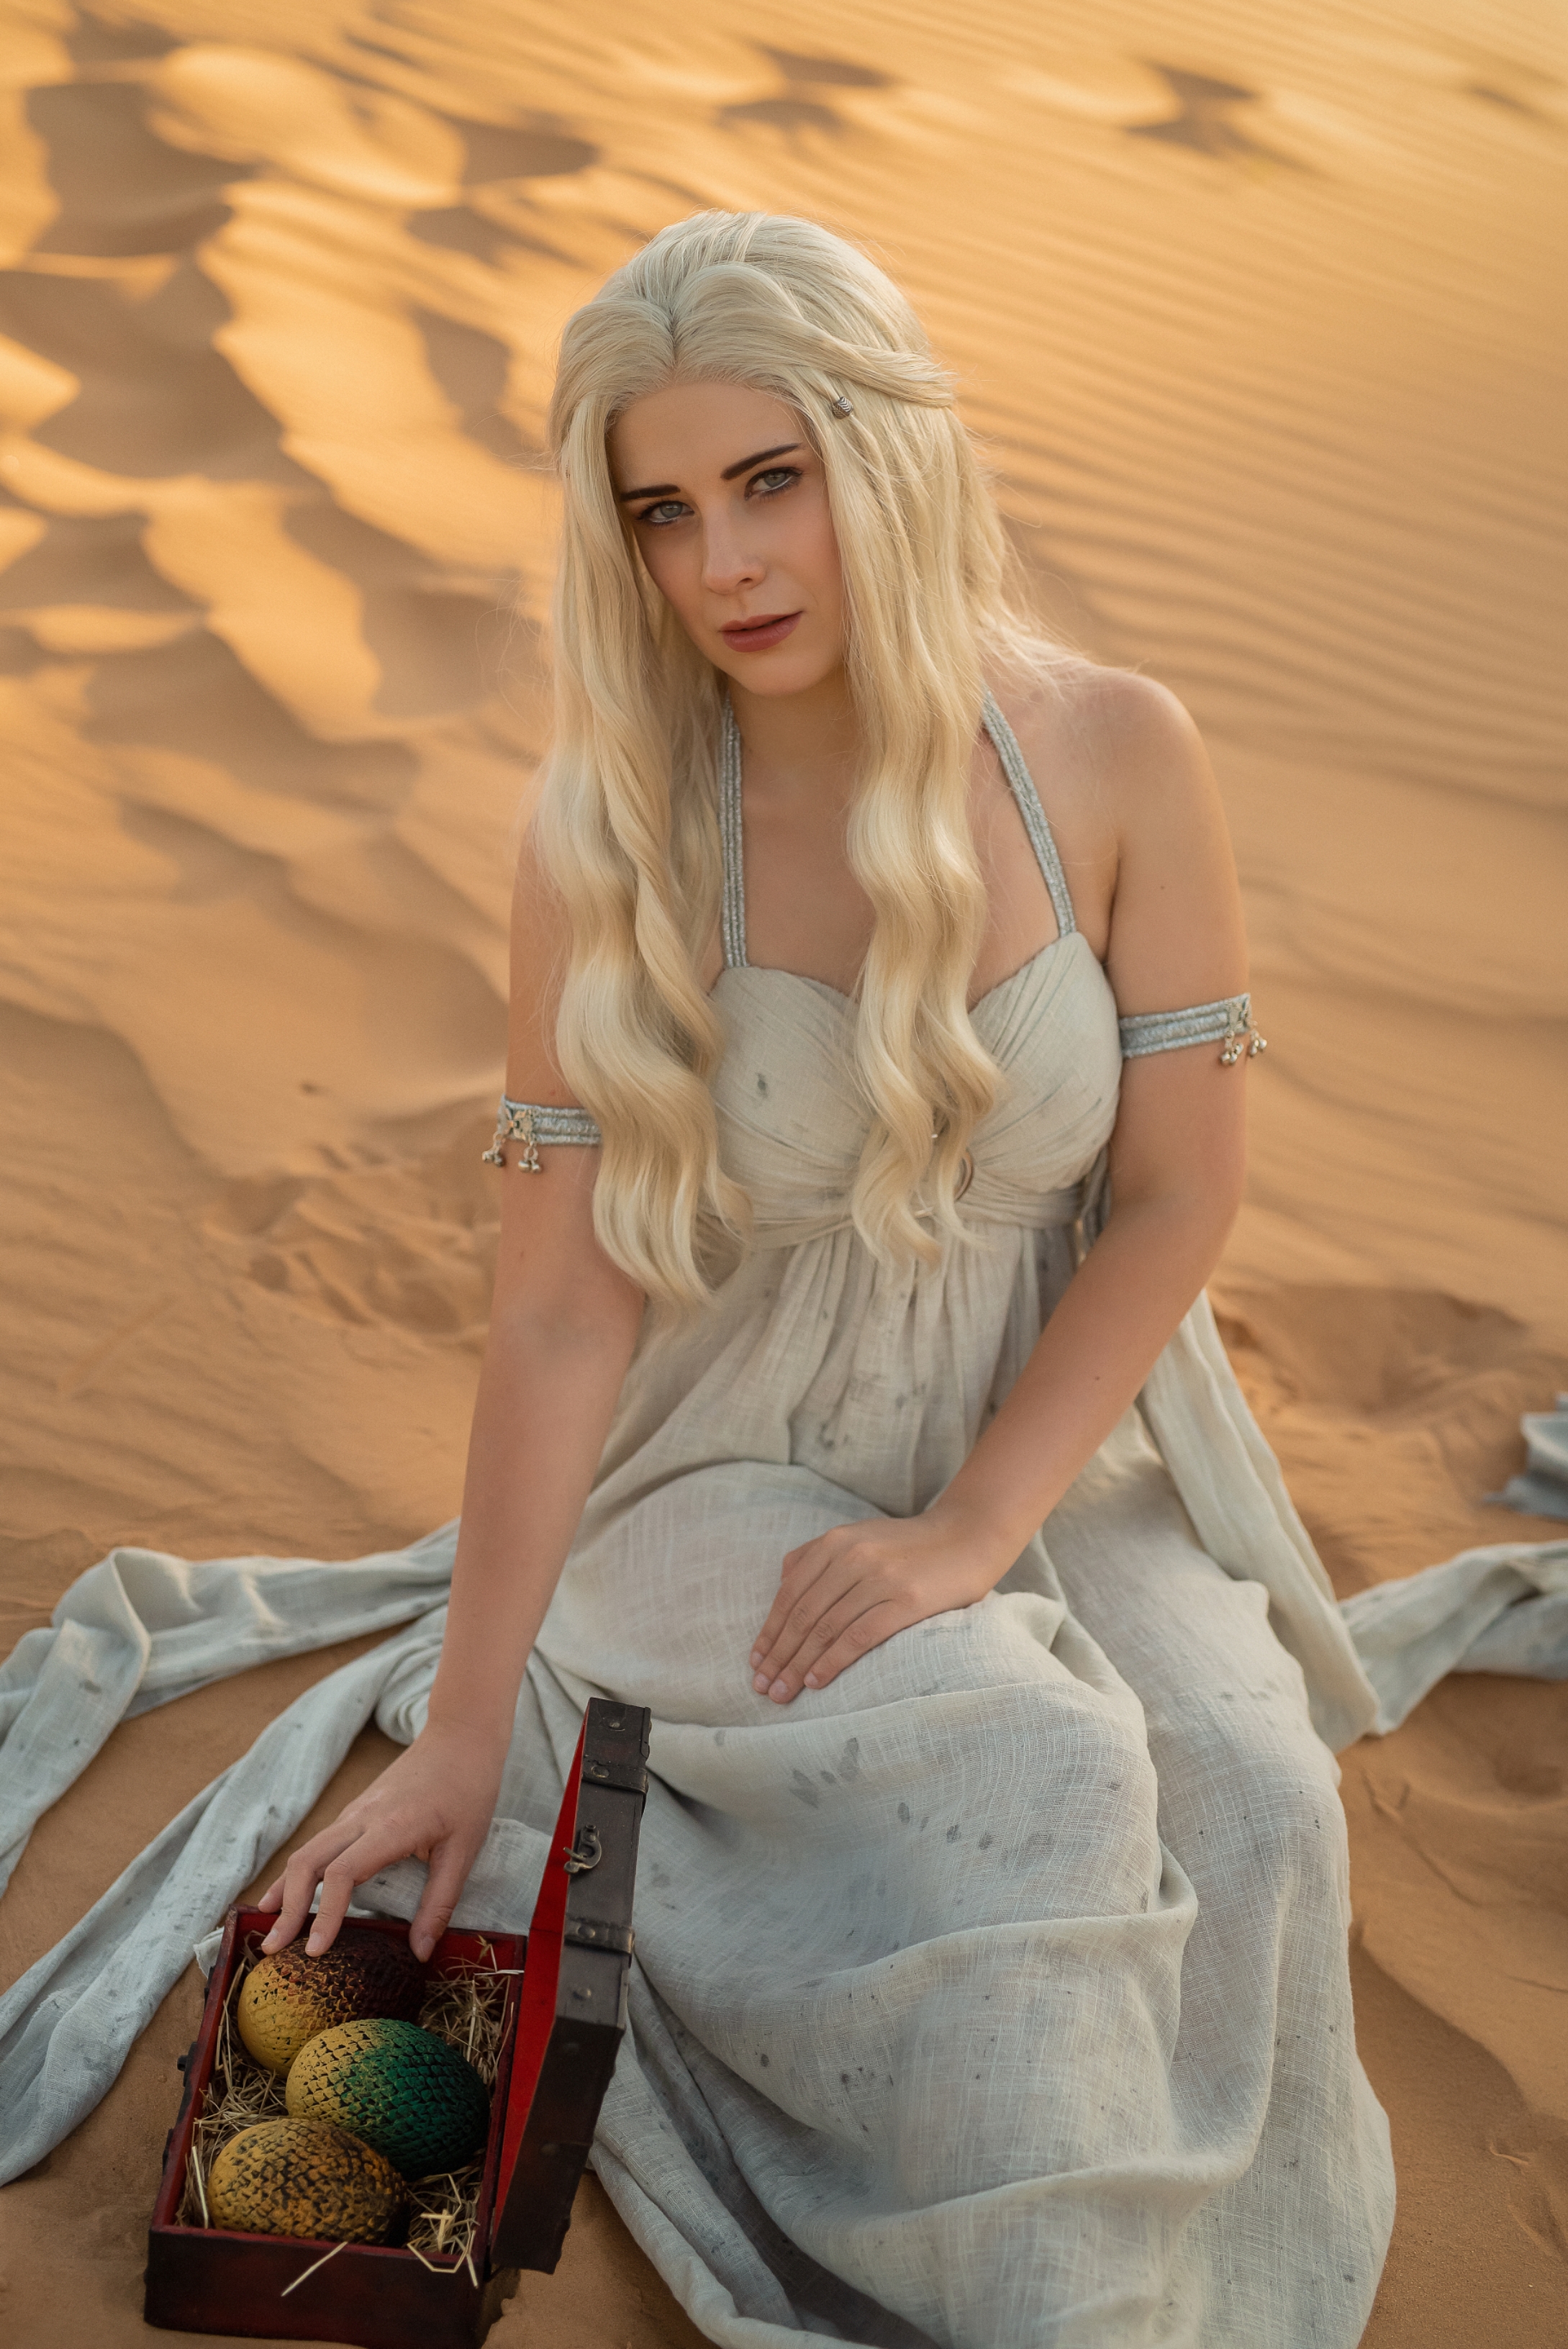 DaenerysTargaryen_by_DungeonQueen.jpg